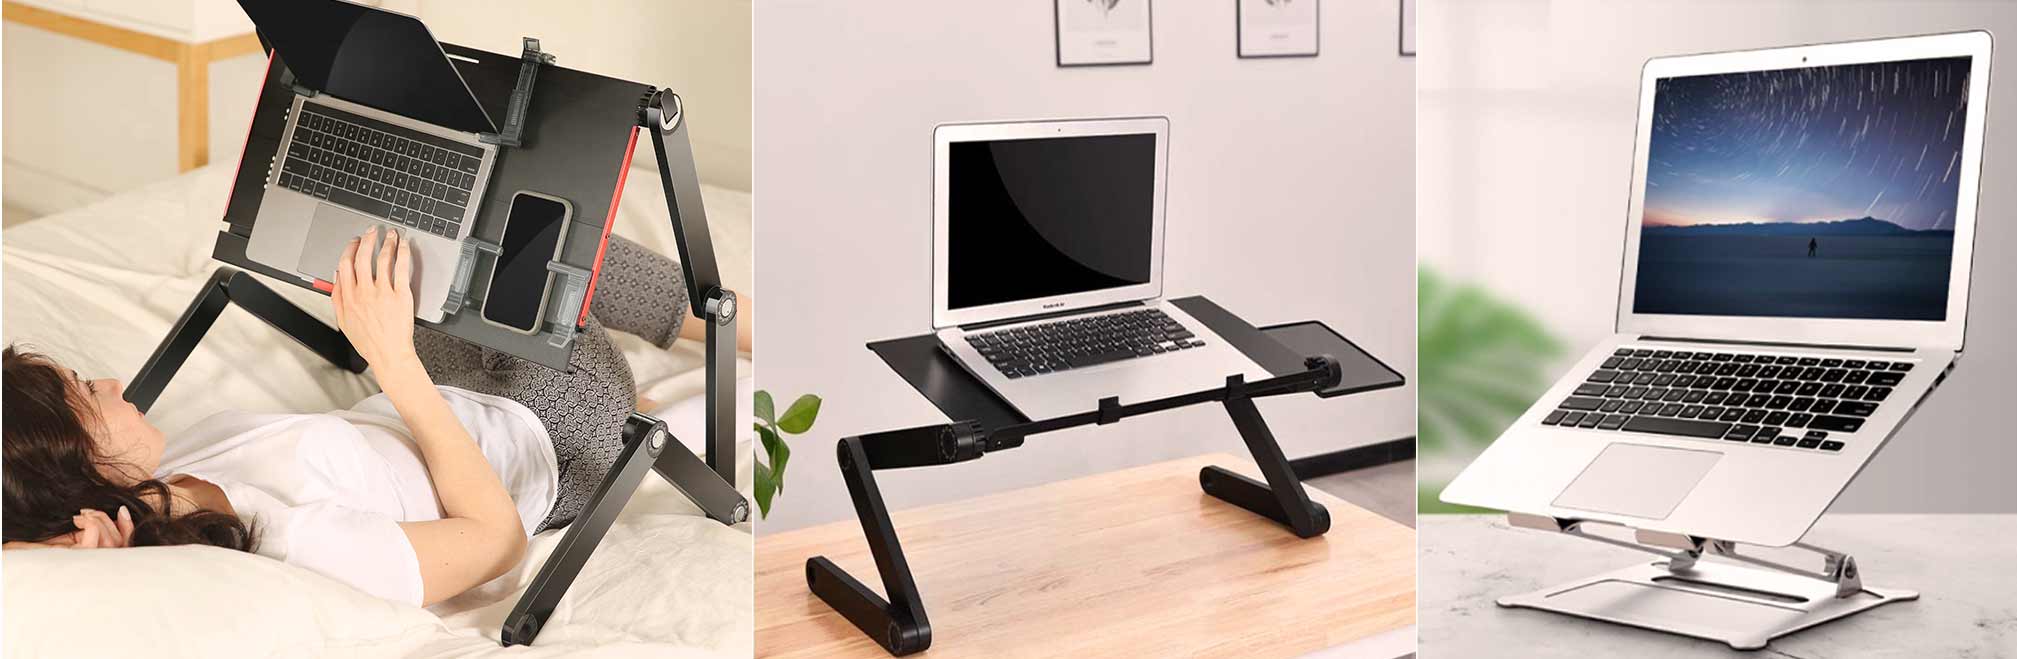 خرید میز لپ تاپ، راهنمای خرید میز لپ تاپ، مدل میز لپ تاپ